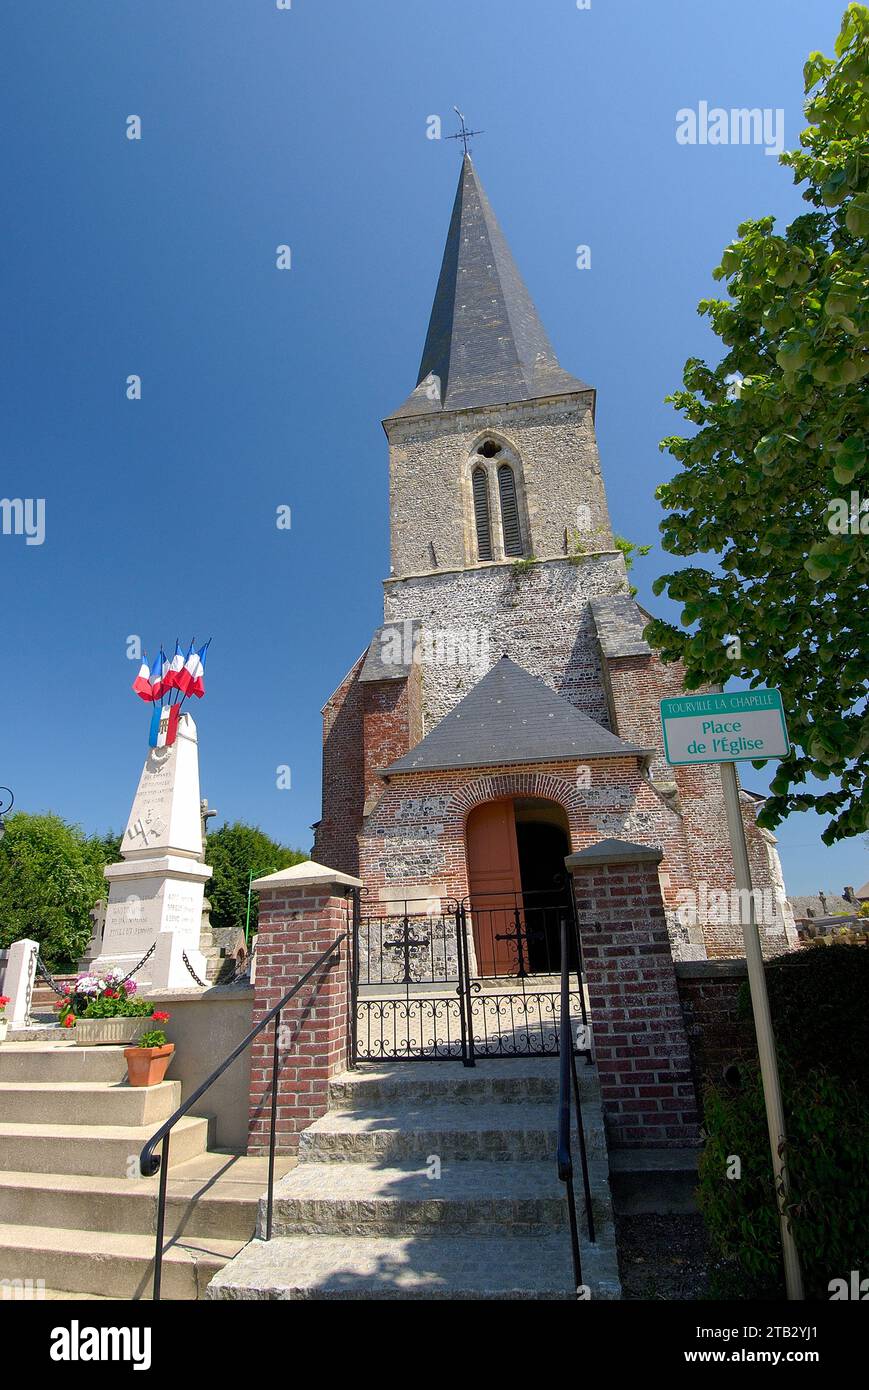 Tourville-la-Chapelle (Francia settentrionale): Memoriale di guerra con bandiere francesi in occasione della cerimonia di commemorazione dell'armistizio dell'8 maggio 1945. Foto Stock